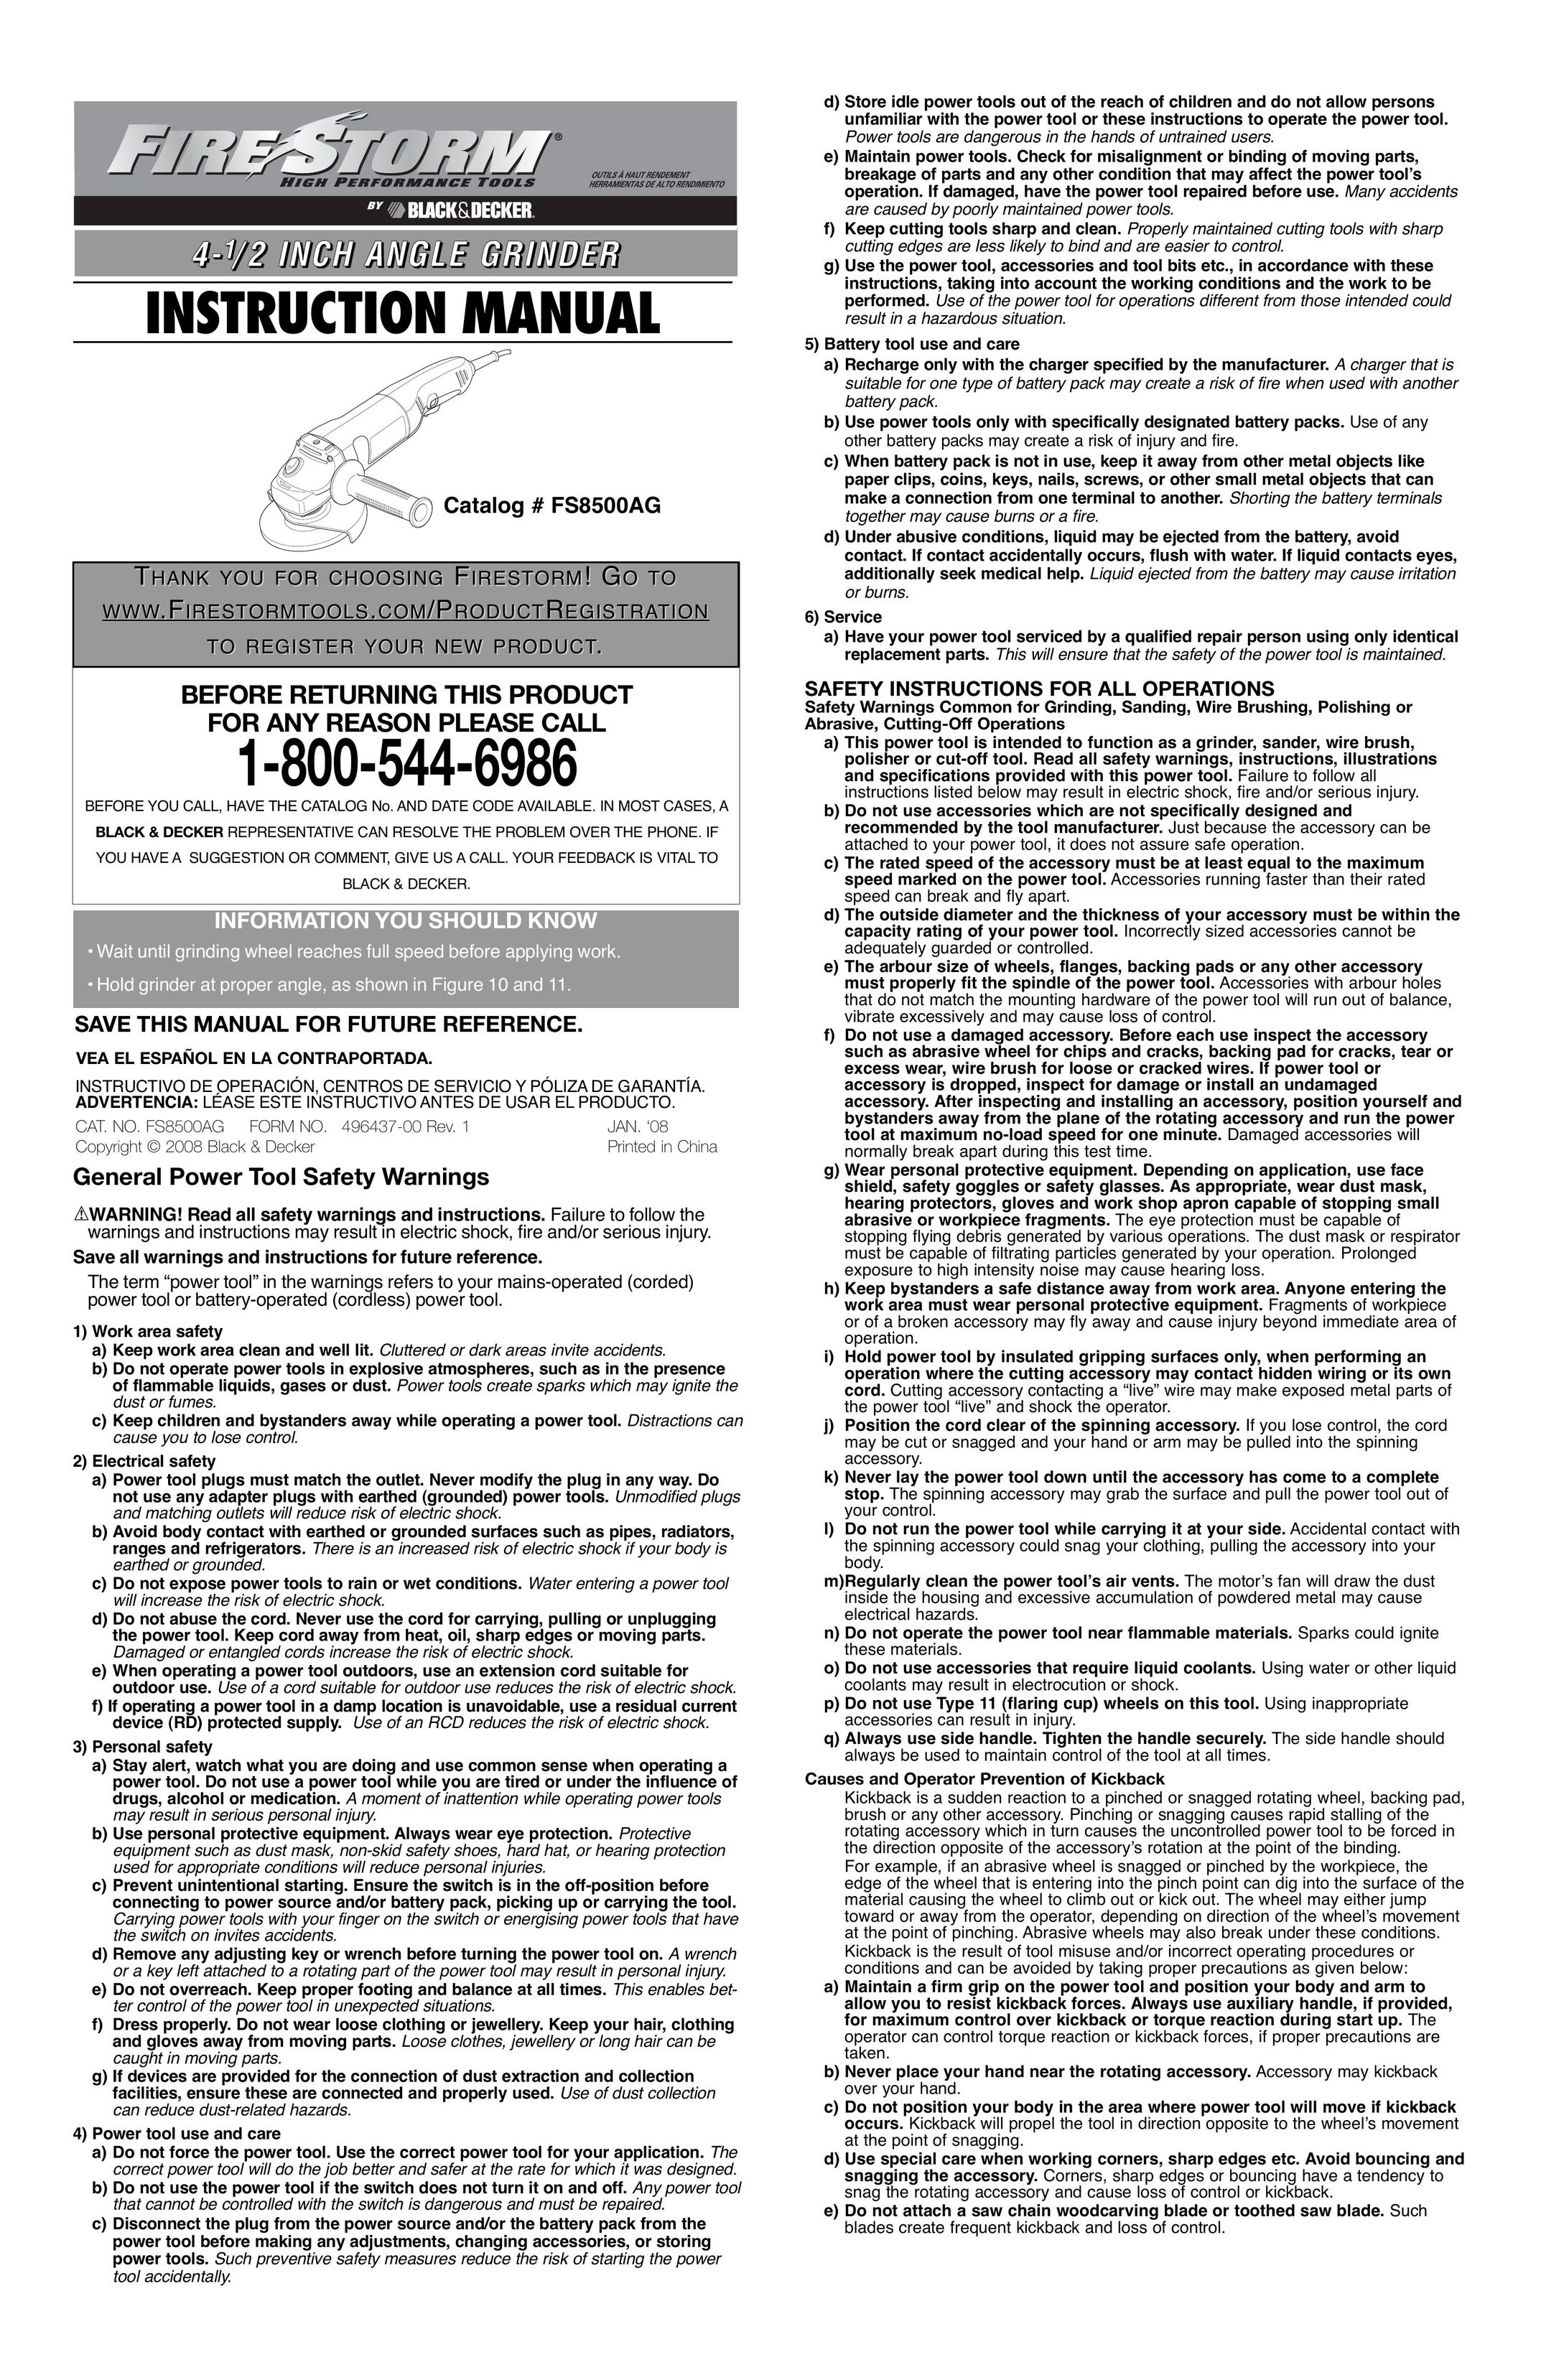 Black & Decker 496437-00 Grinder User Manual